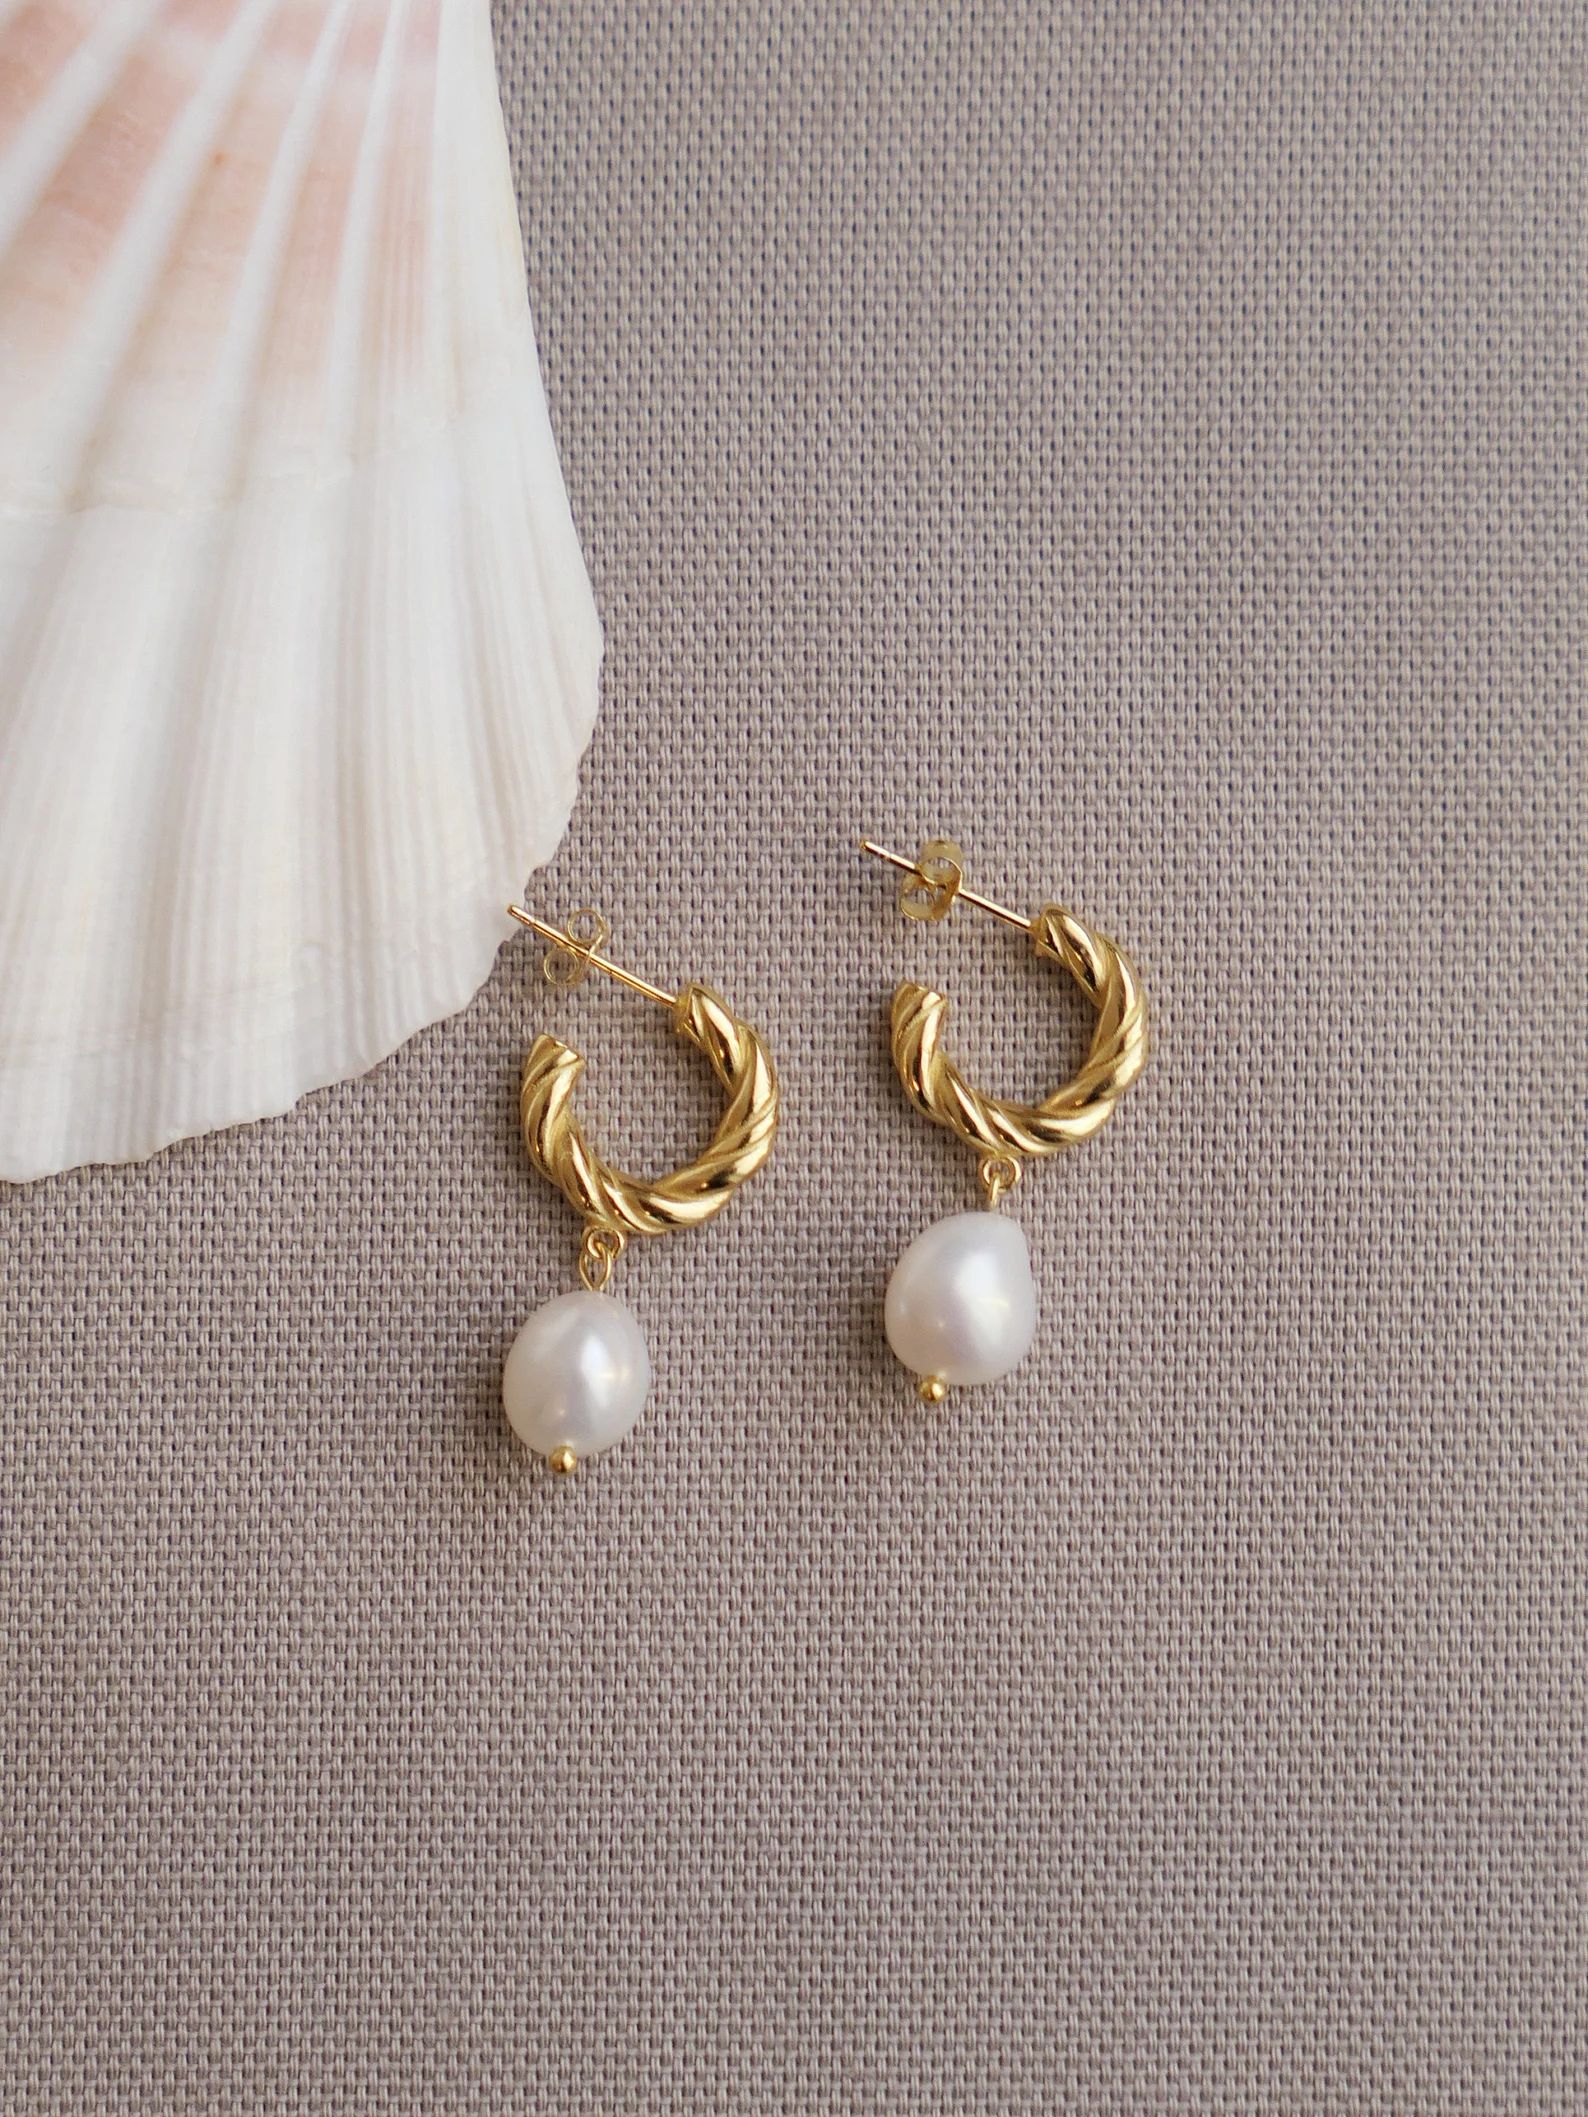 Gold Pearl Hoops|Gold Pearl Huggie Earrings|Twisted Gold Pearl Hoops|Gold Pearl Earrings|Pearl Dr... | Etsy (US)